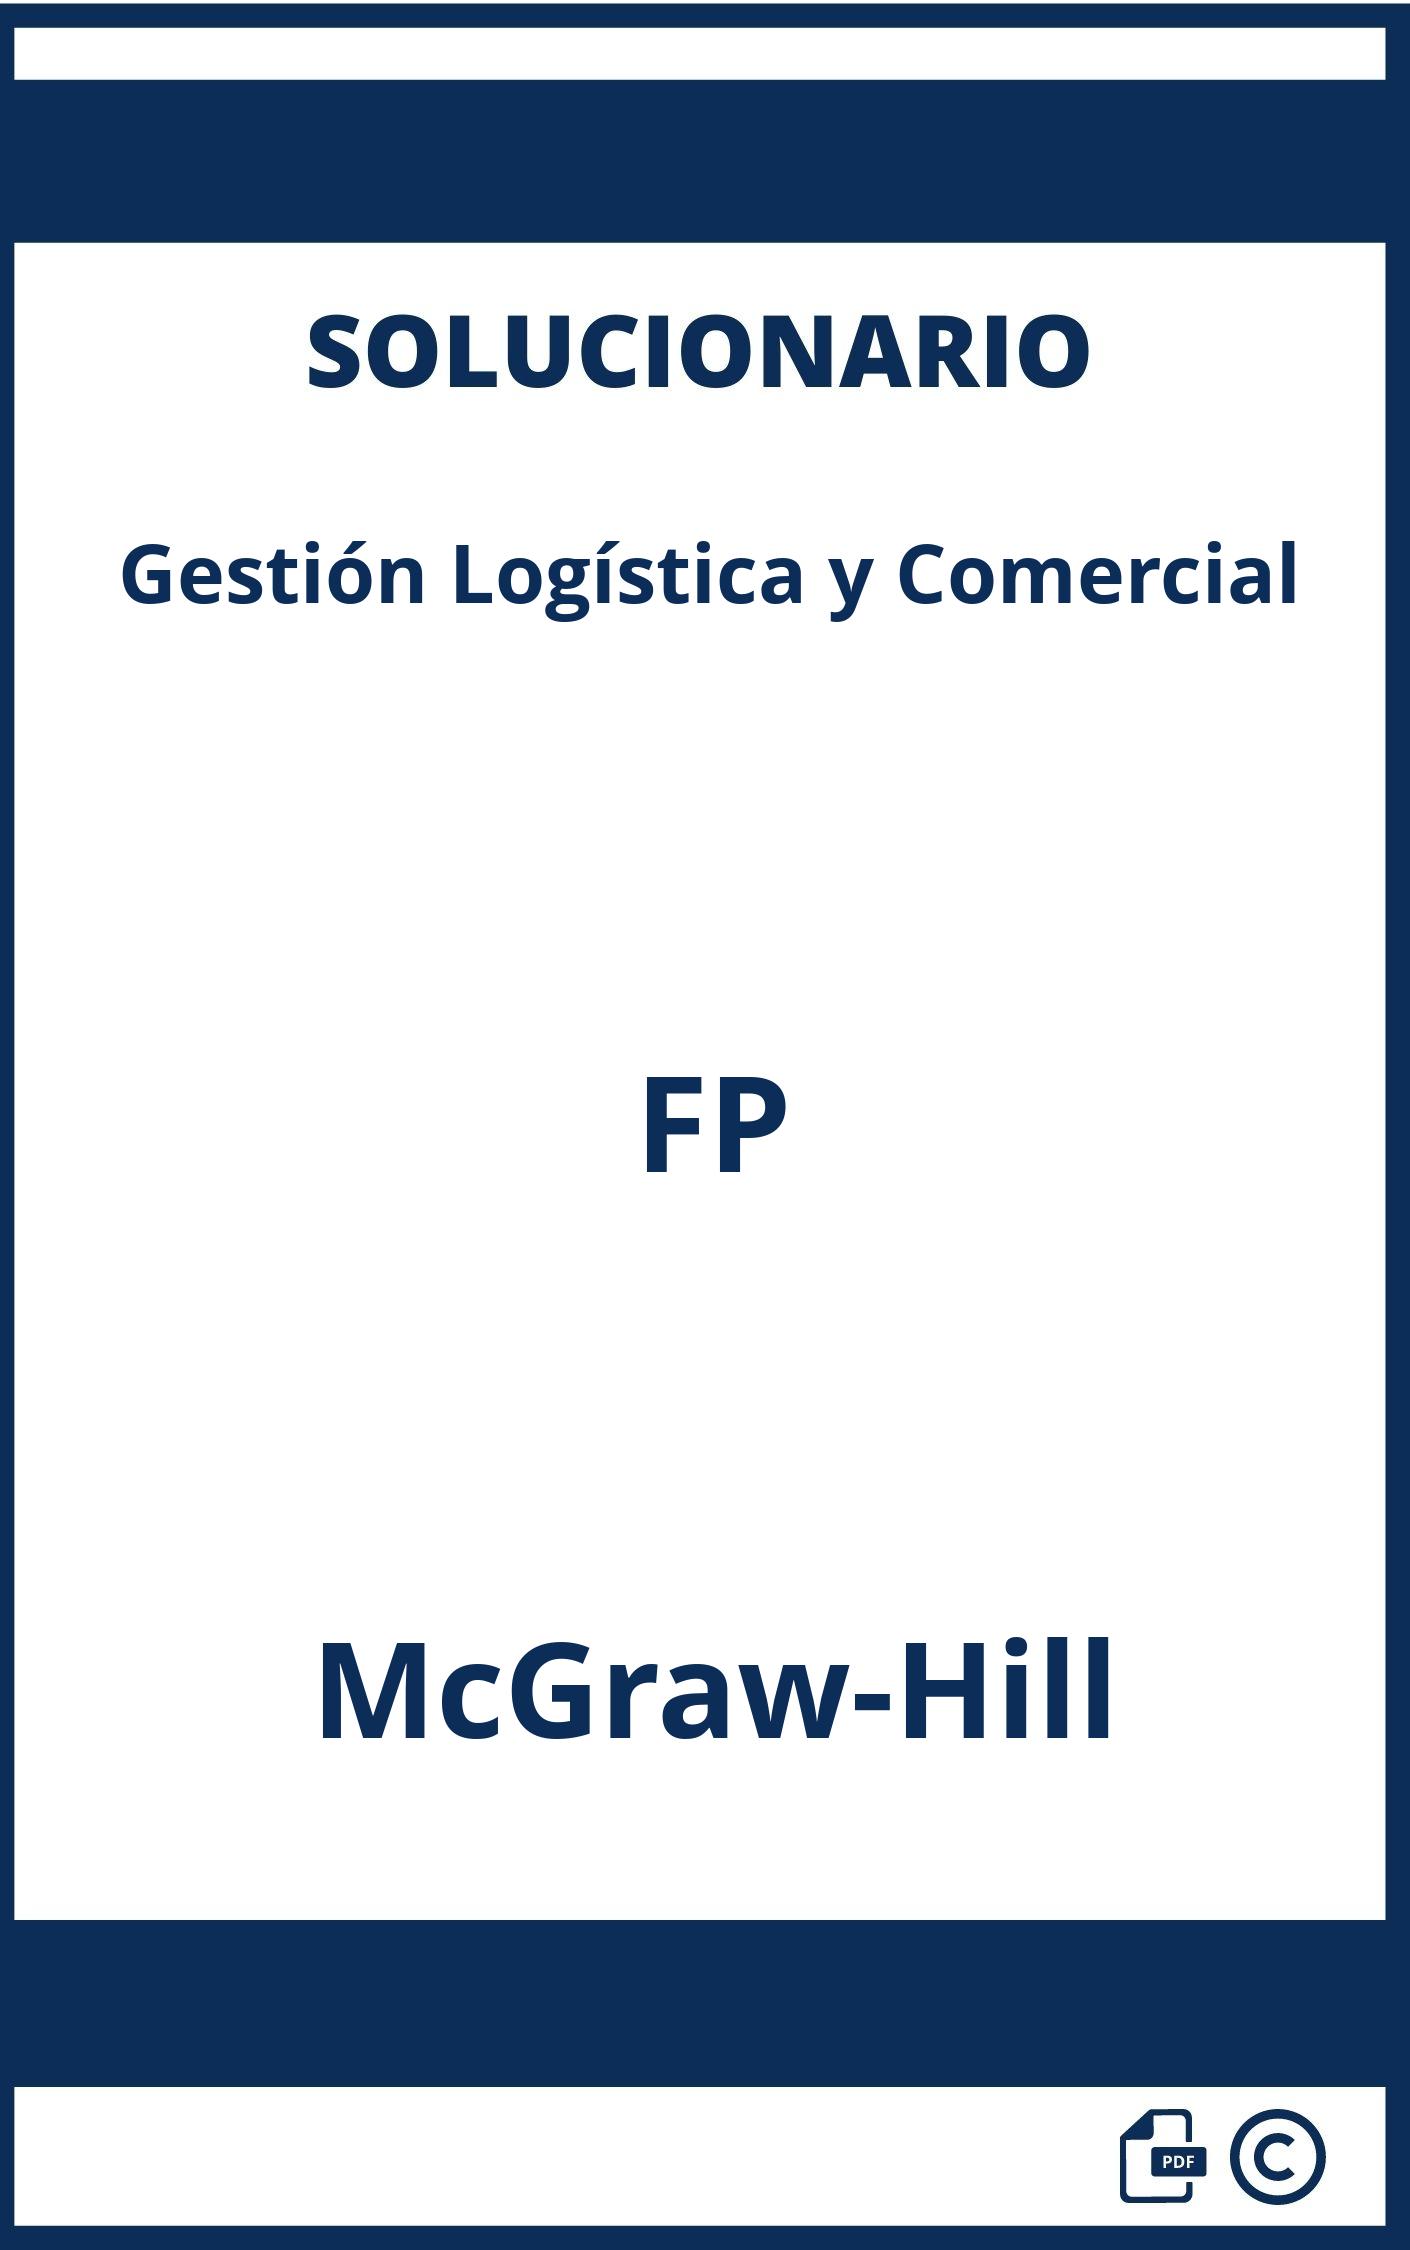 Solucionario Gestión Logística y Comercial FP McGraw-Hill